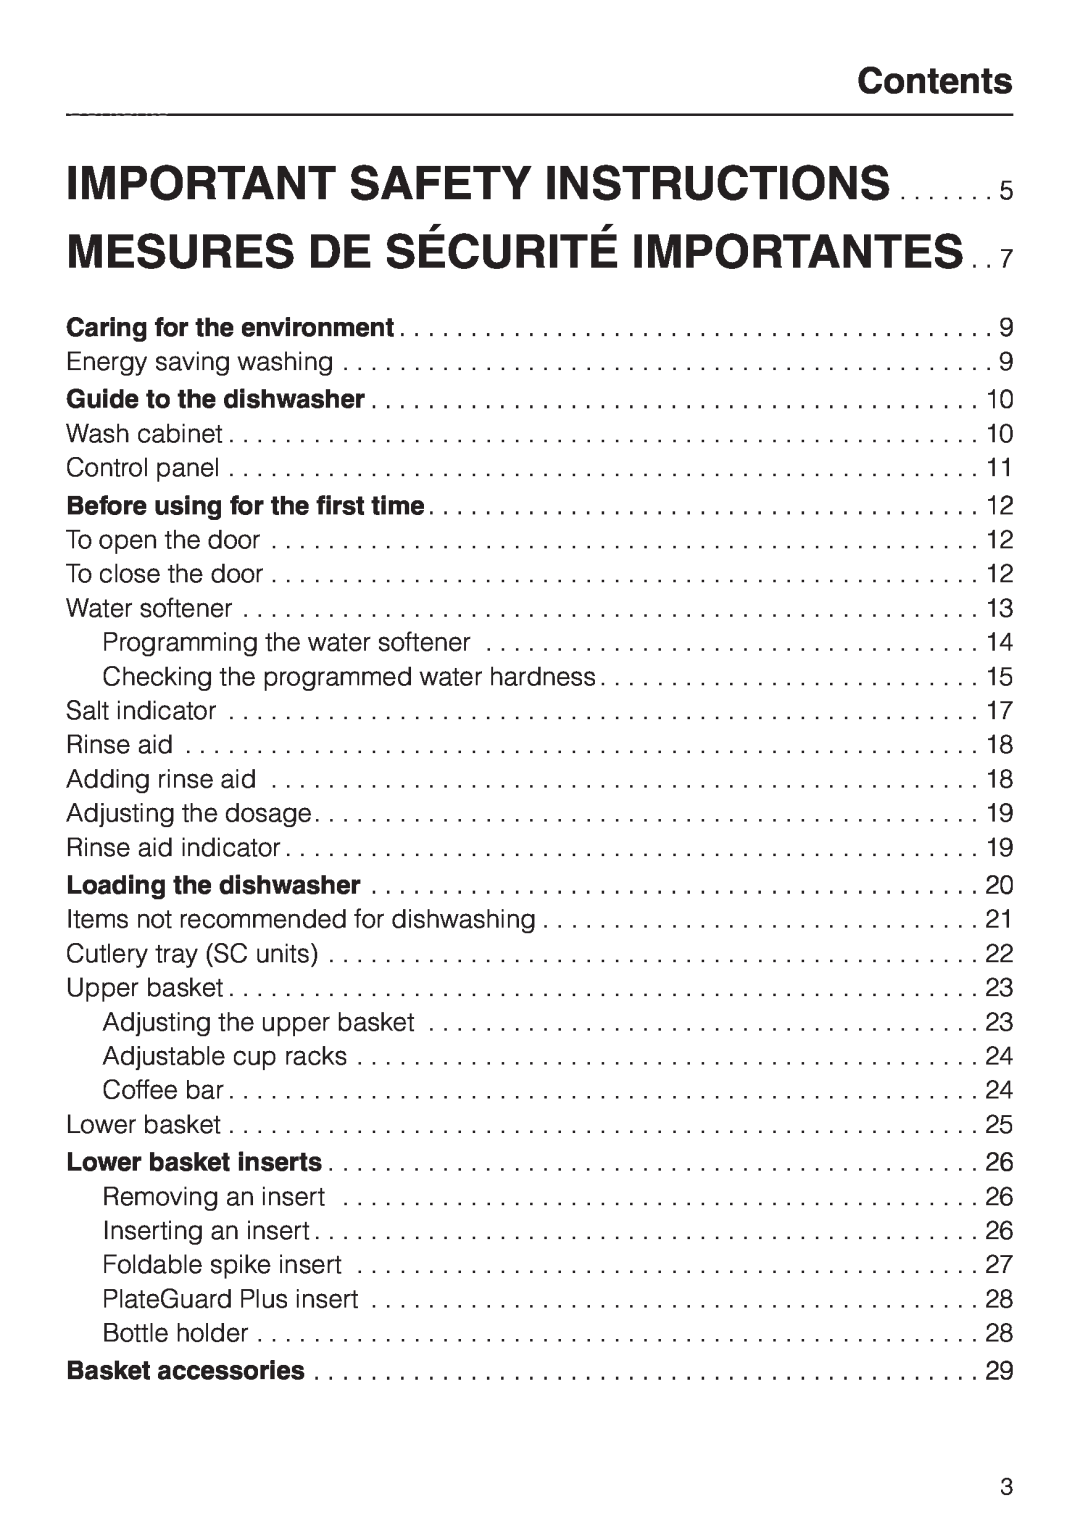 Miele G658SCVI, G858SCVI manual Important Safety Instructions, Mesures De Sécurité Importantes, Contents 